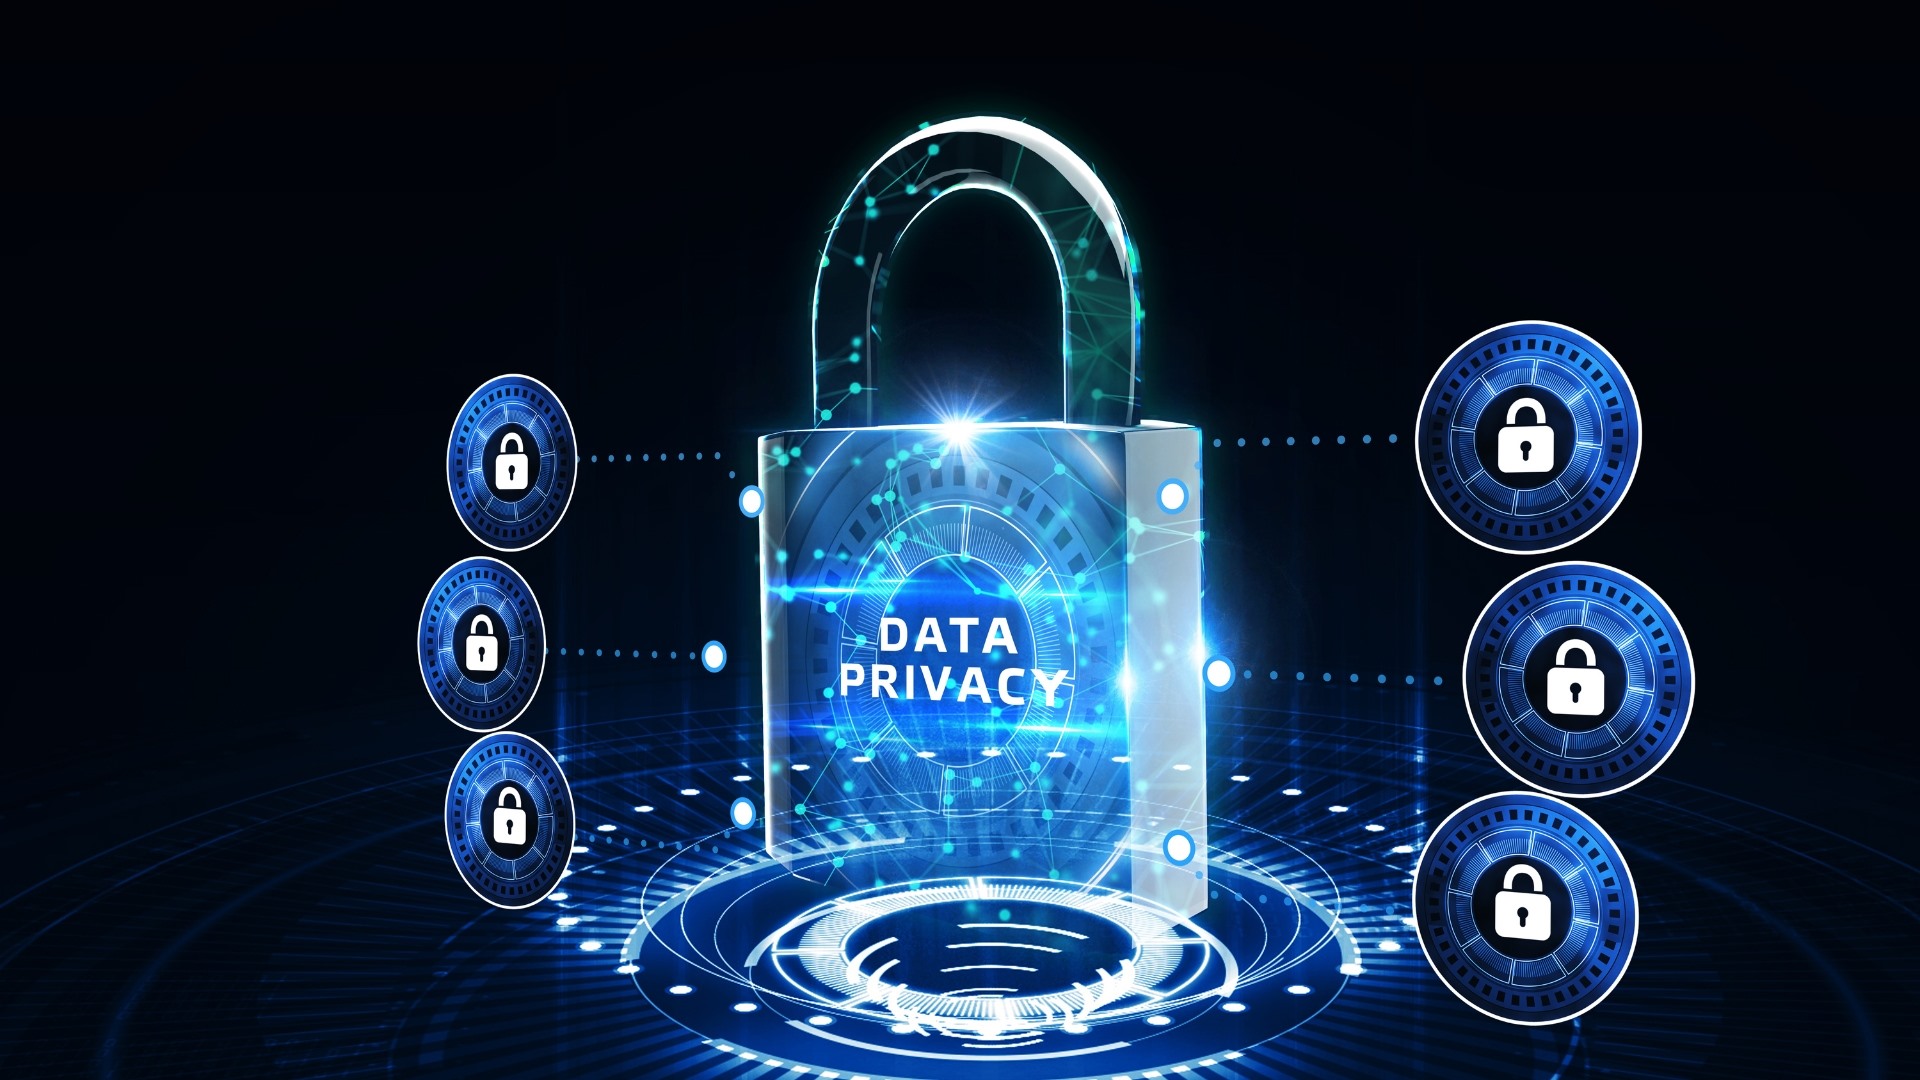 Προστασία προσωπικών πληροφοριών στο διαδίκτυο: Στρατηγικές για τη διαφύλαξη της ψηφιακής σας ταυτότητας